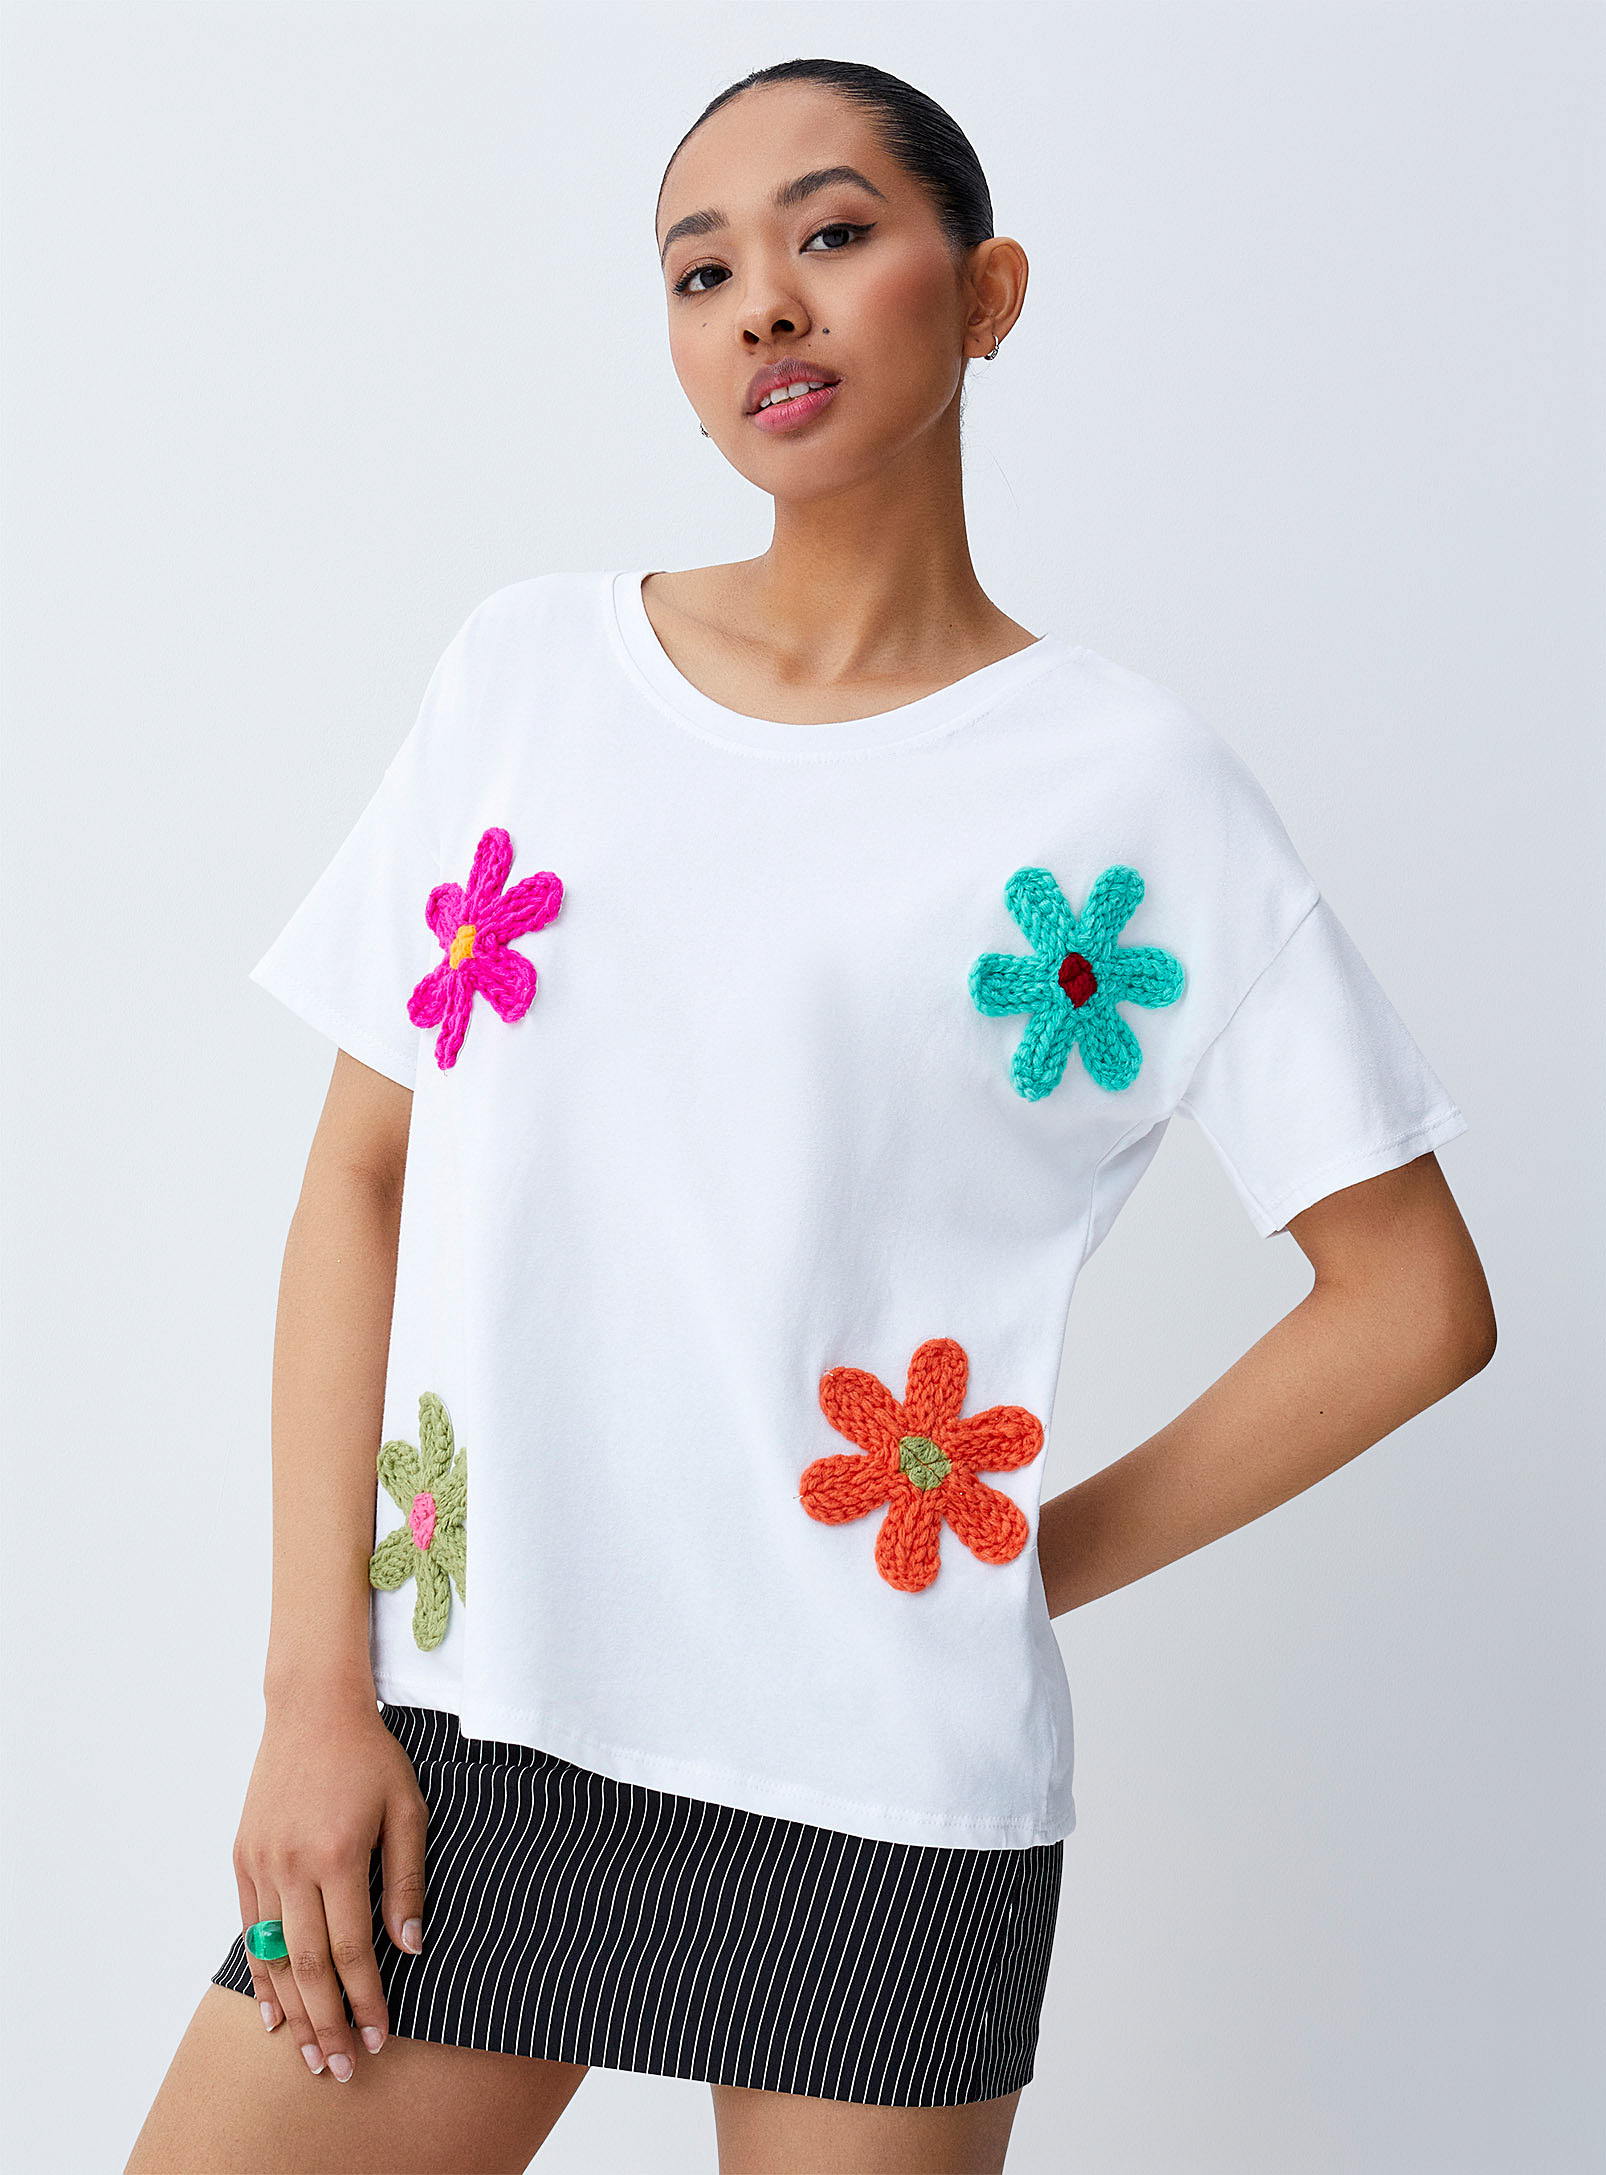 Twik - Le t-shirt fleurs crochet colorées